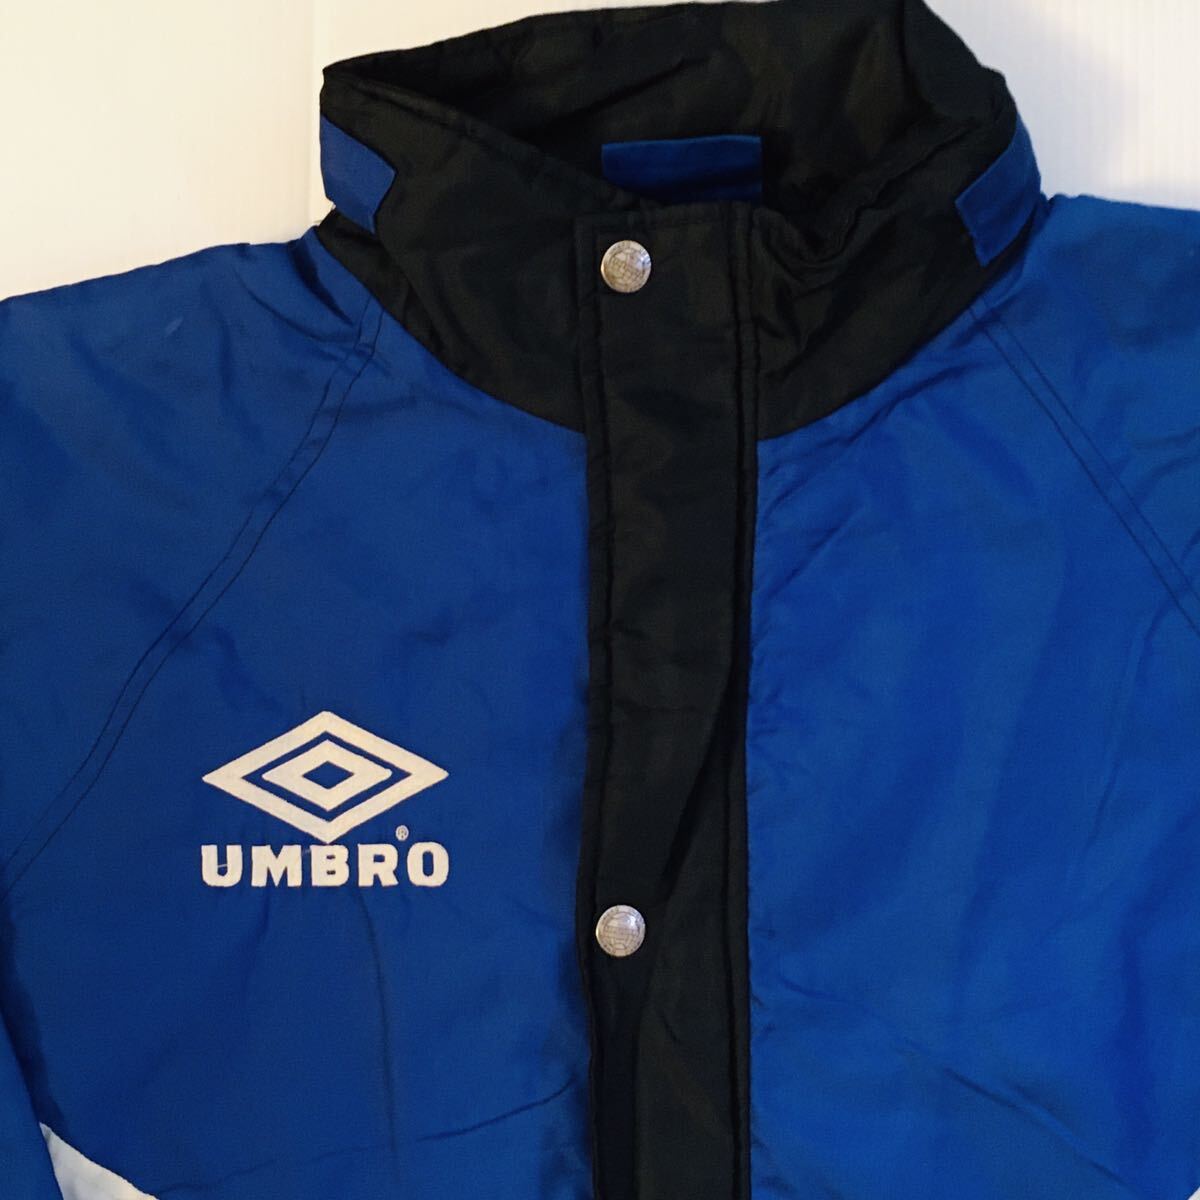  big size Umbro UMBRO XL sleet -n nylon jacket bench coat coach jacket black × blue × white 